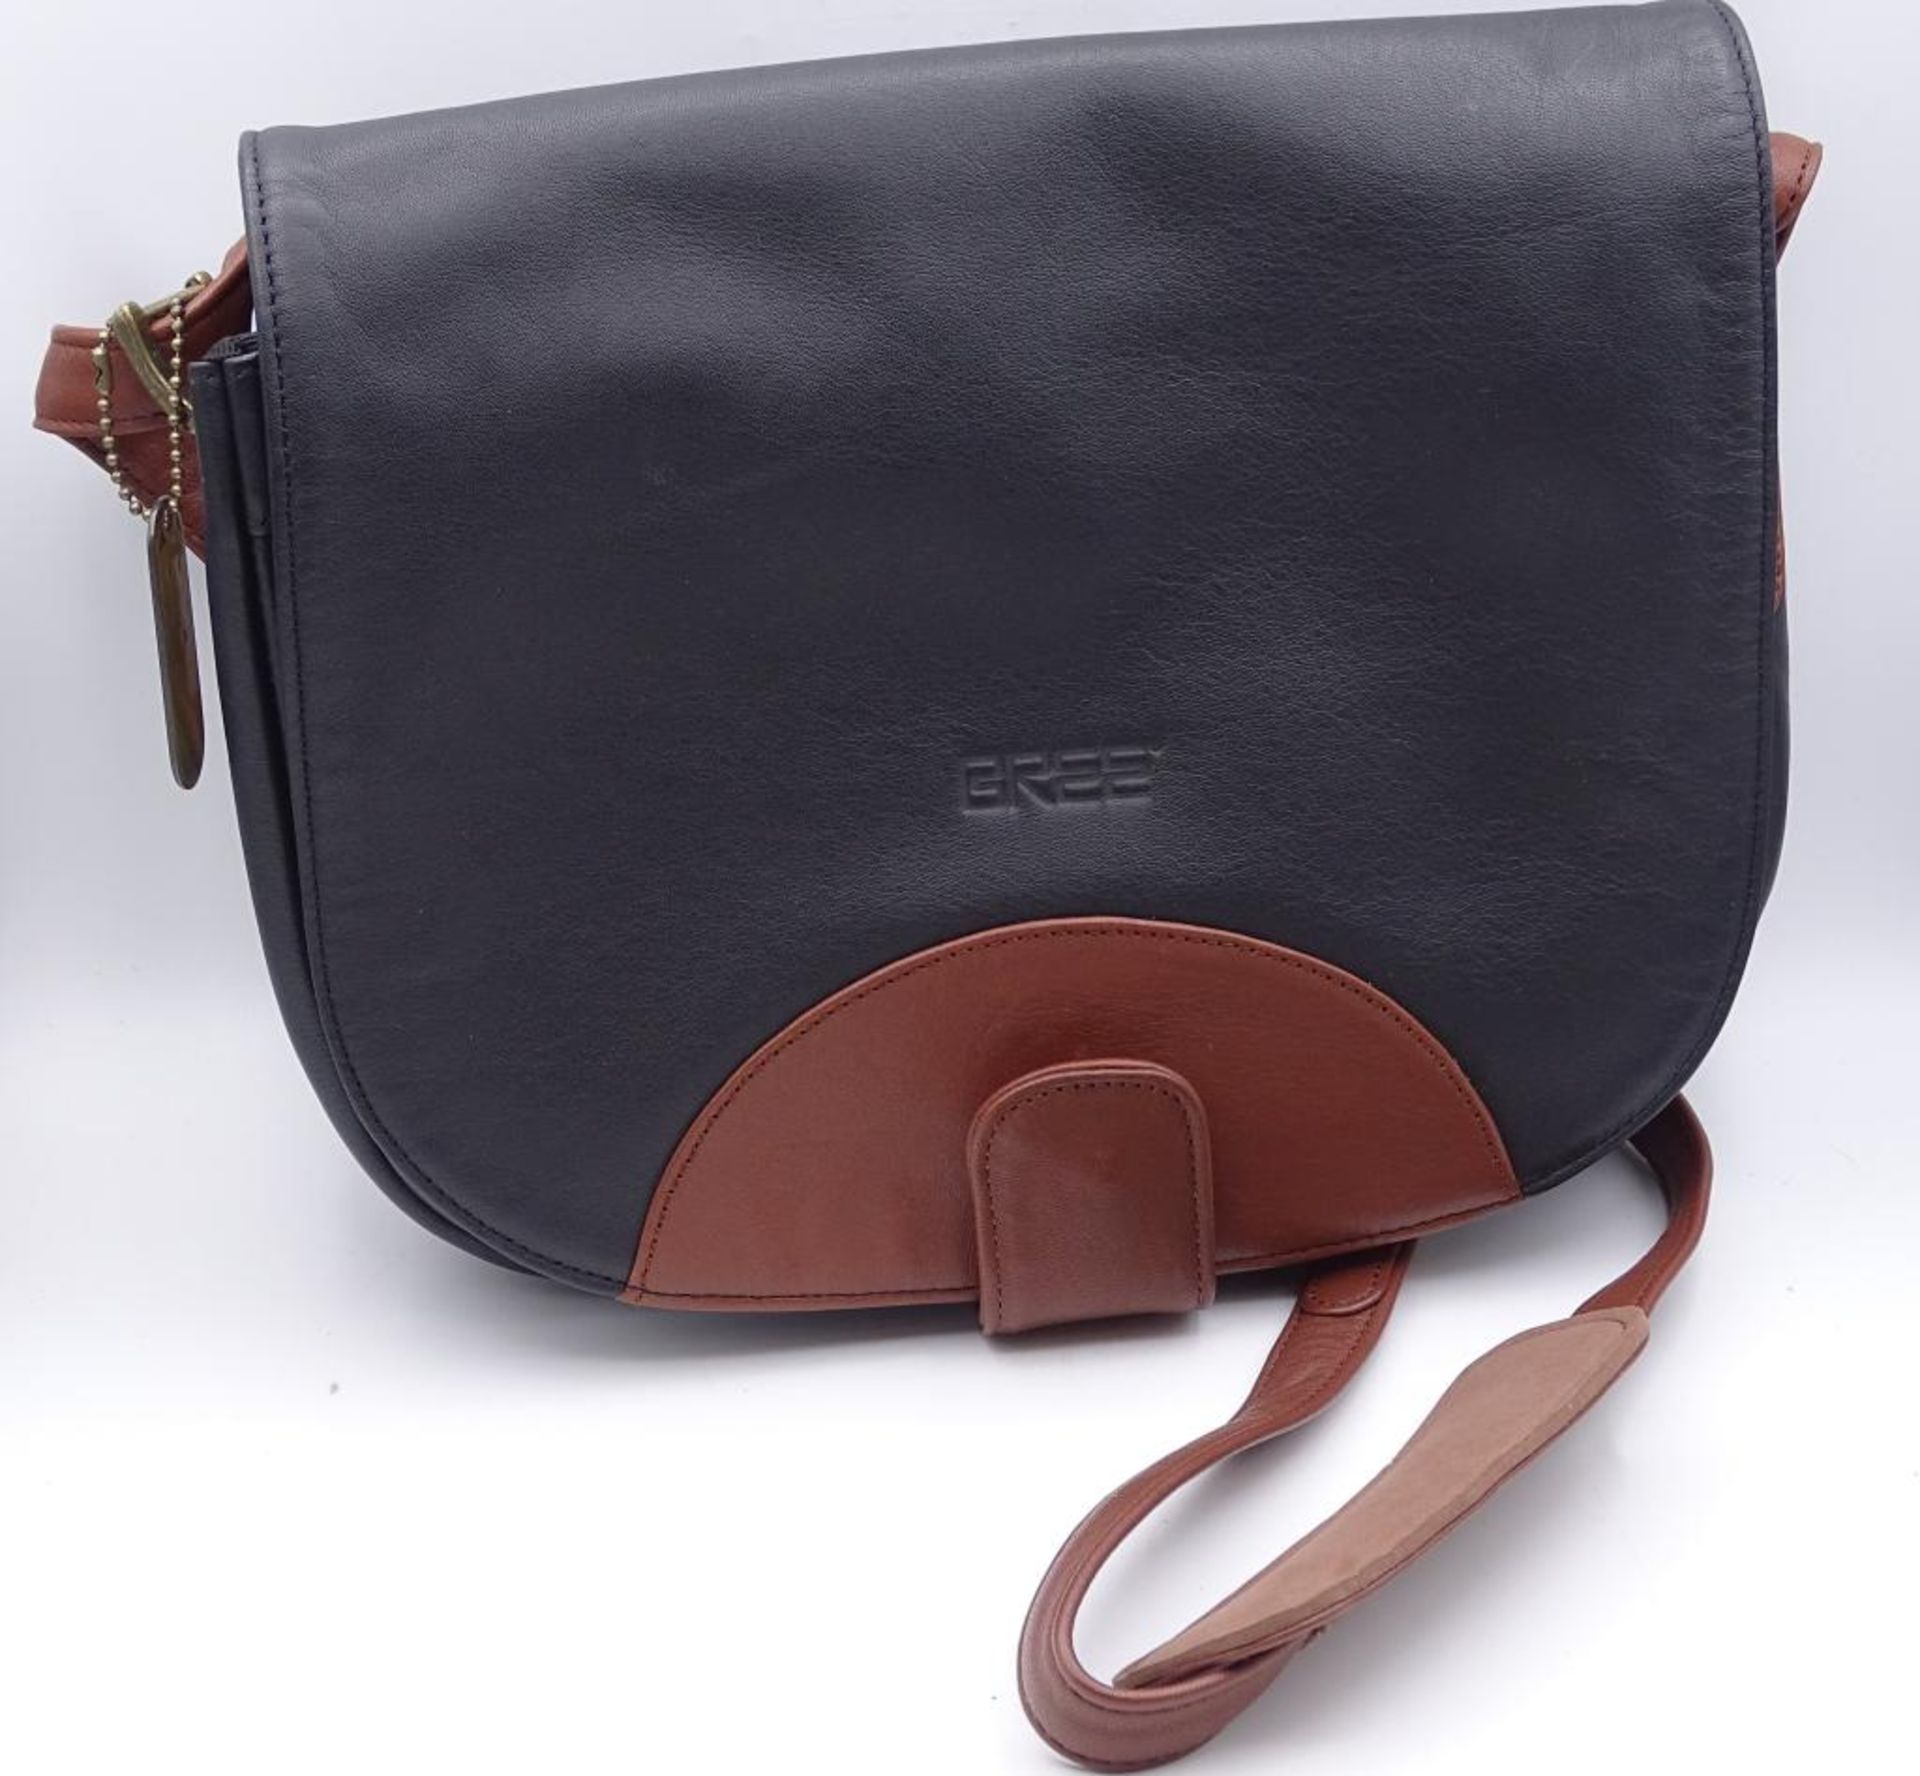 Damen Handtasche, "Bree",schwarz/braun, neuwertiger Zustand,27x23cm